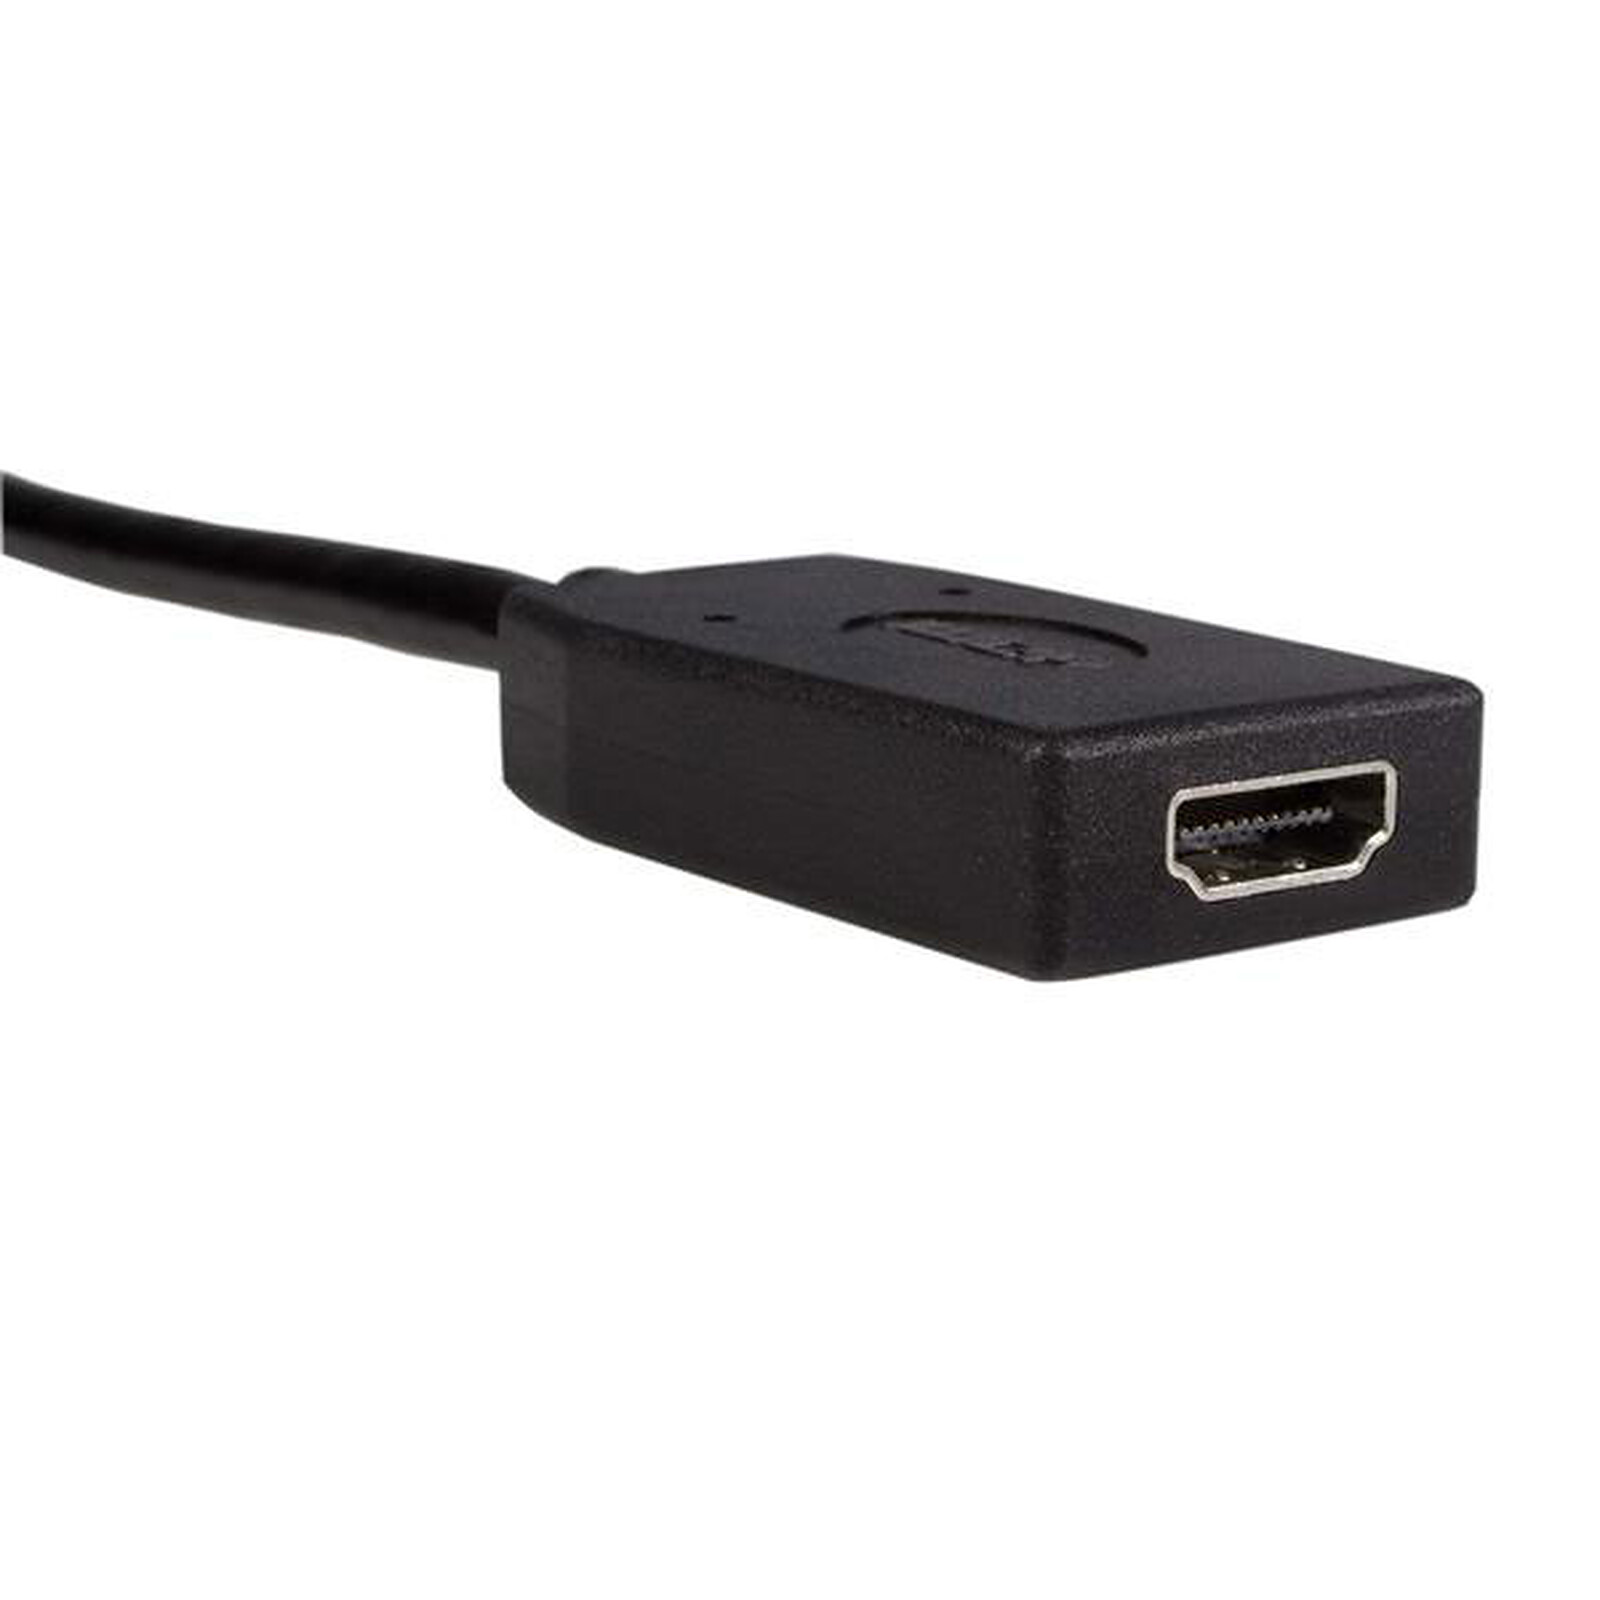 Cable adaptador DisplayPort / HDMI 2.0 activo Clicktronic (5 metros) - HDMI  - LDLC